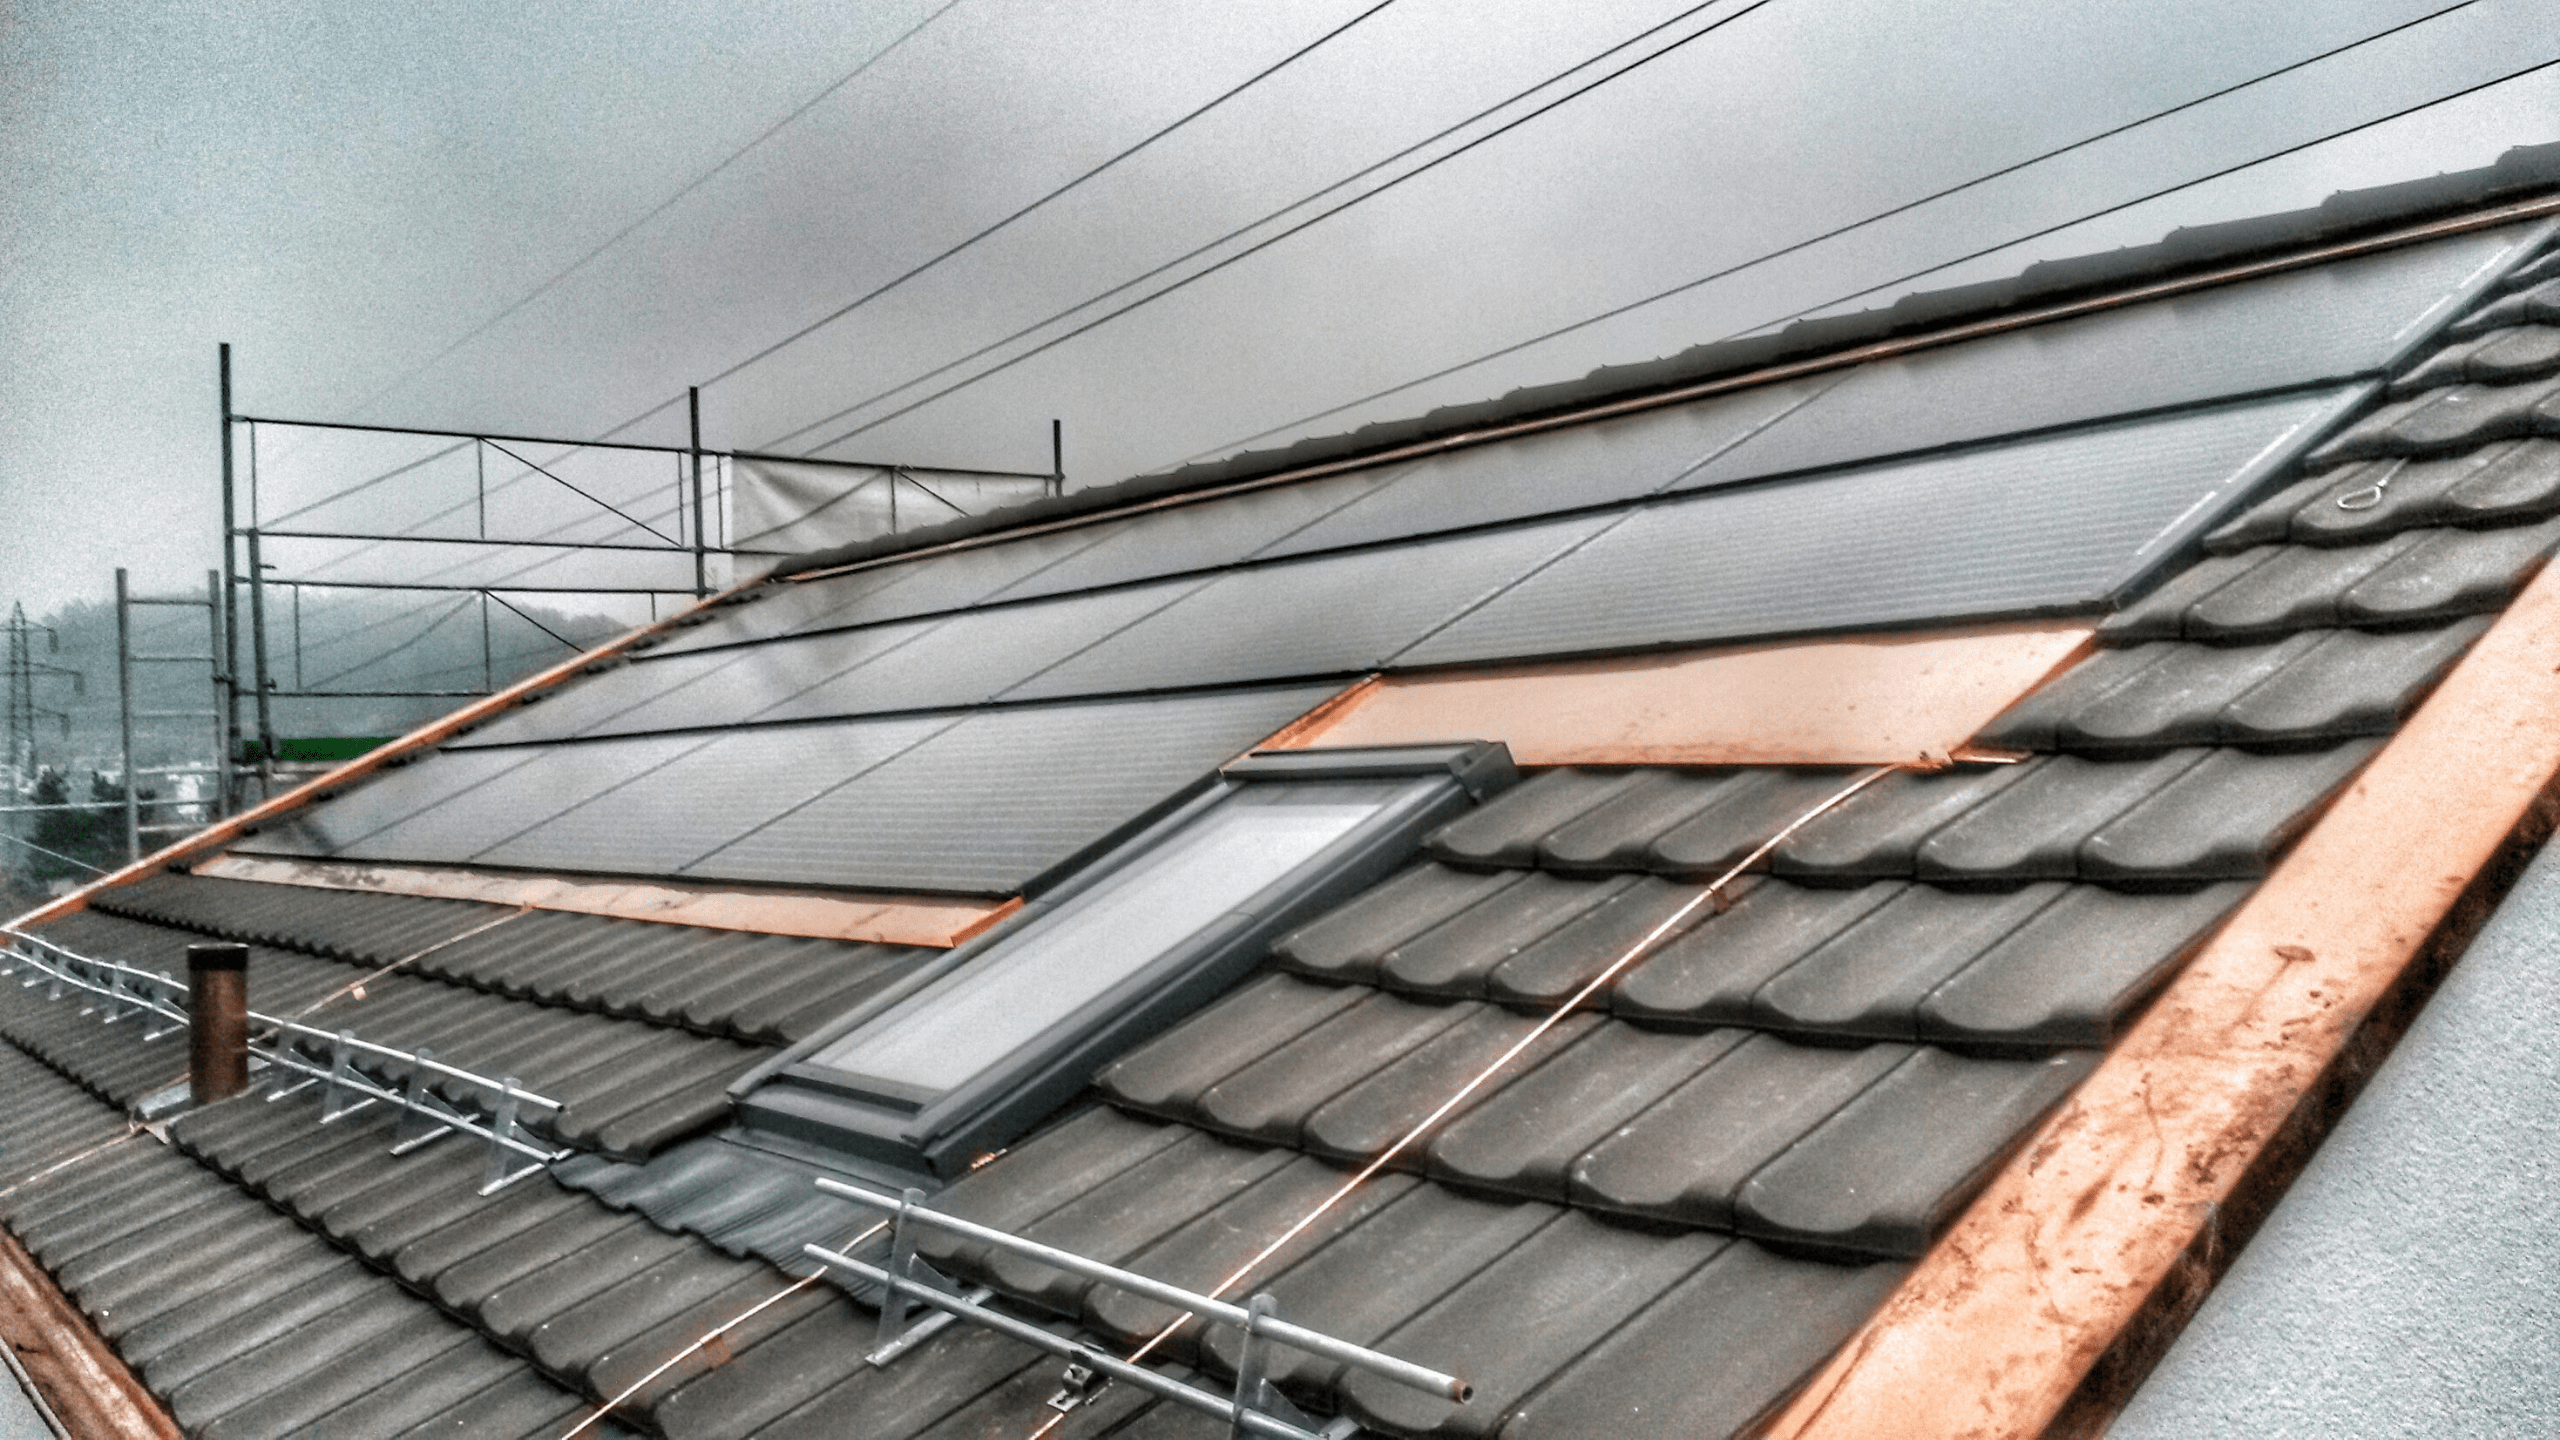 Solaranlagen, Photovoltaik-Anlagen, Schweiz, Zürich, Zug, Solproof GmbH